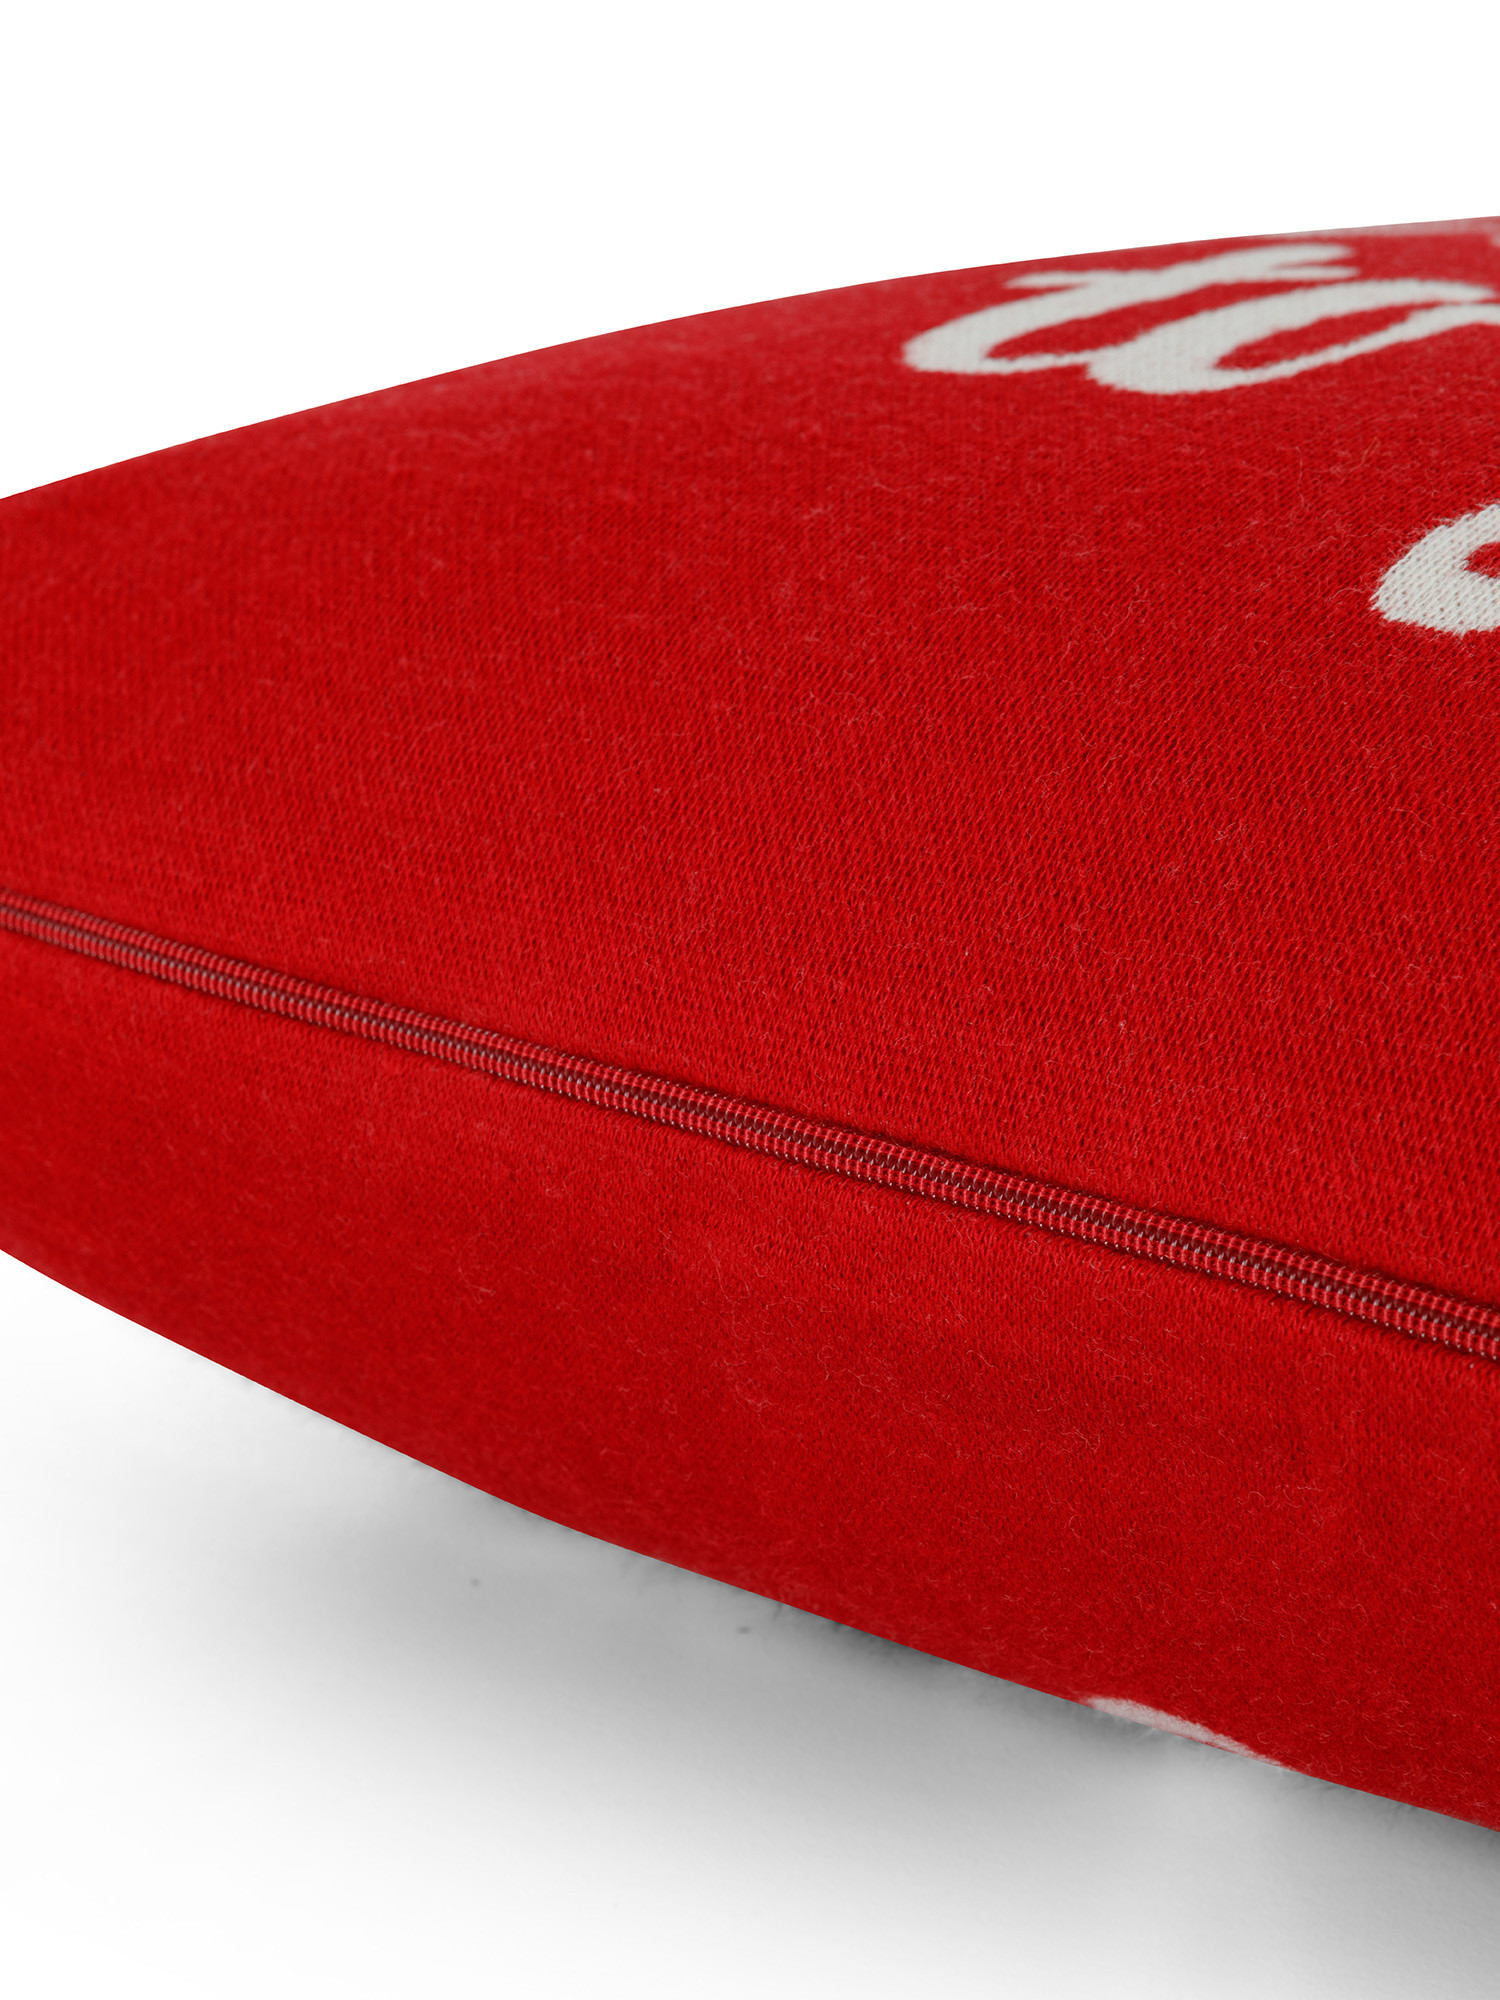 Cuscino in maglia jacquard con scritta 45x45 cm, Rosso, large image number 1